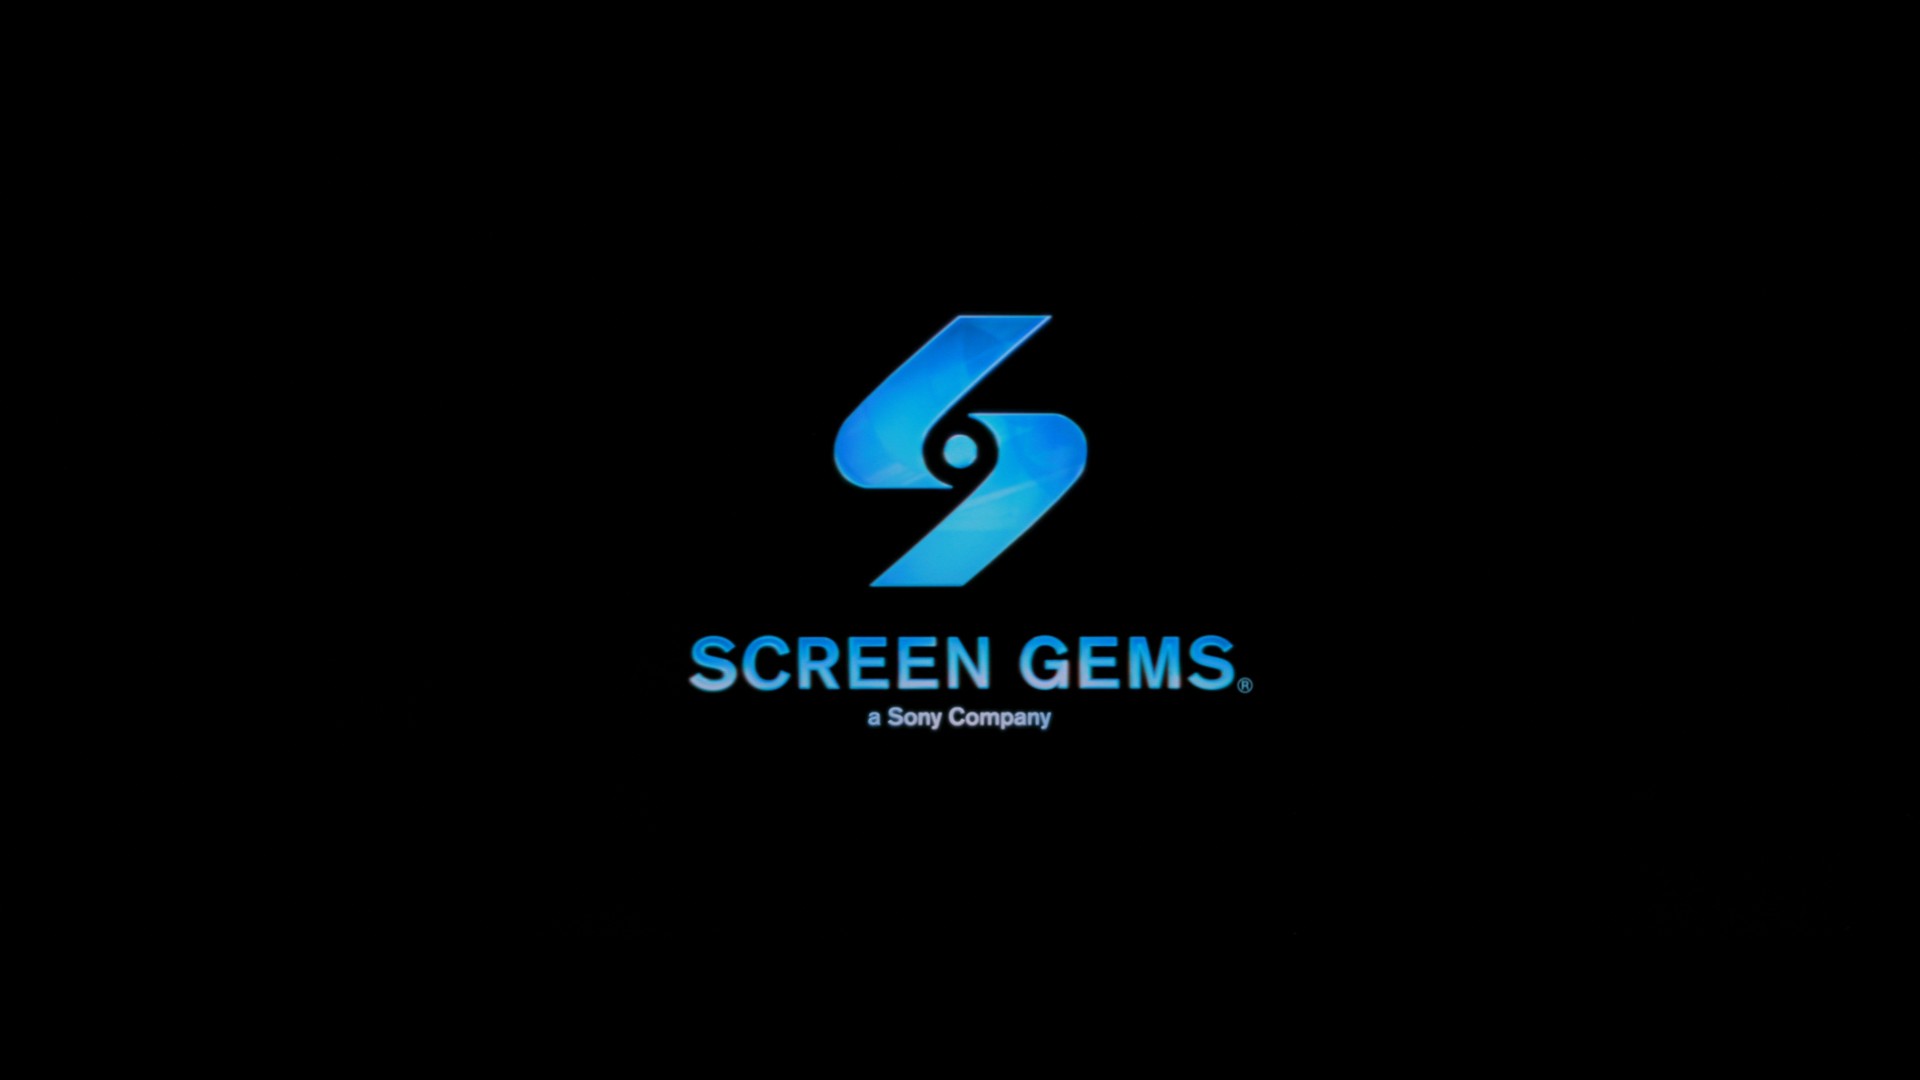 screen gems jobs